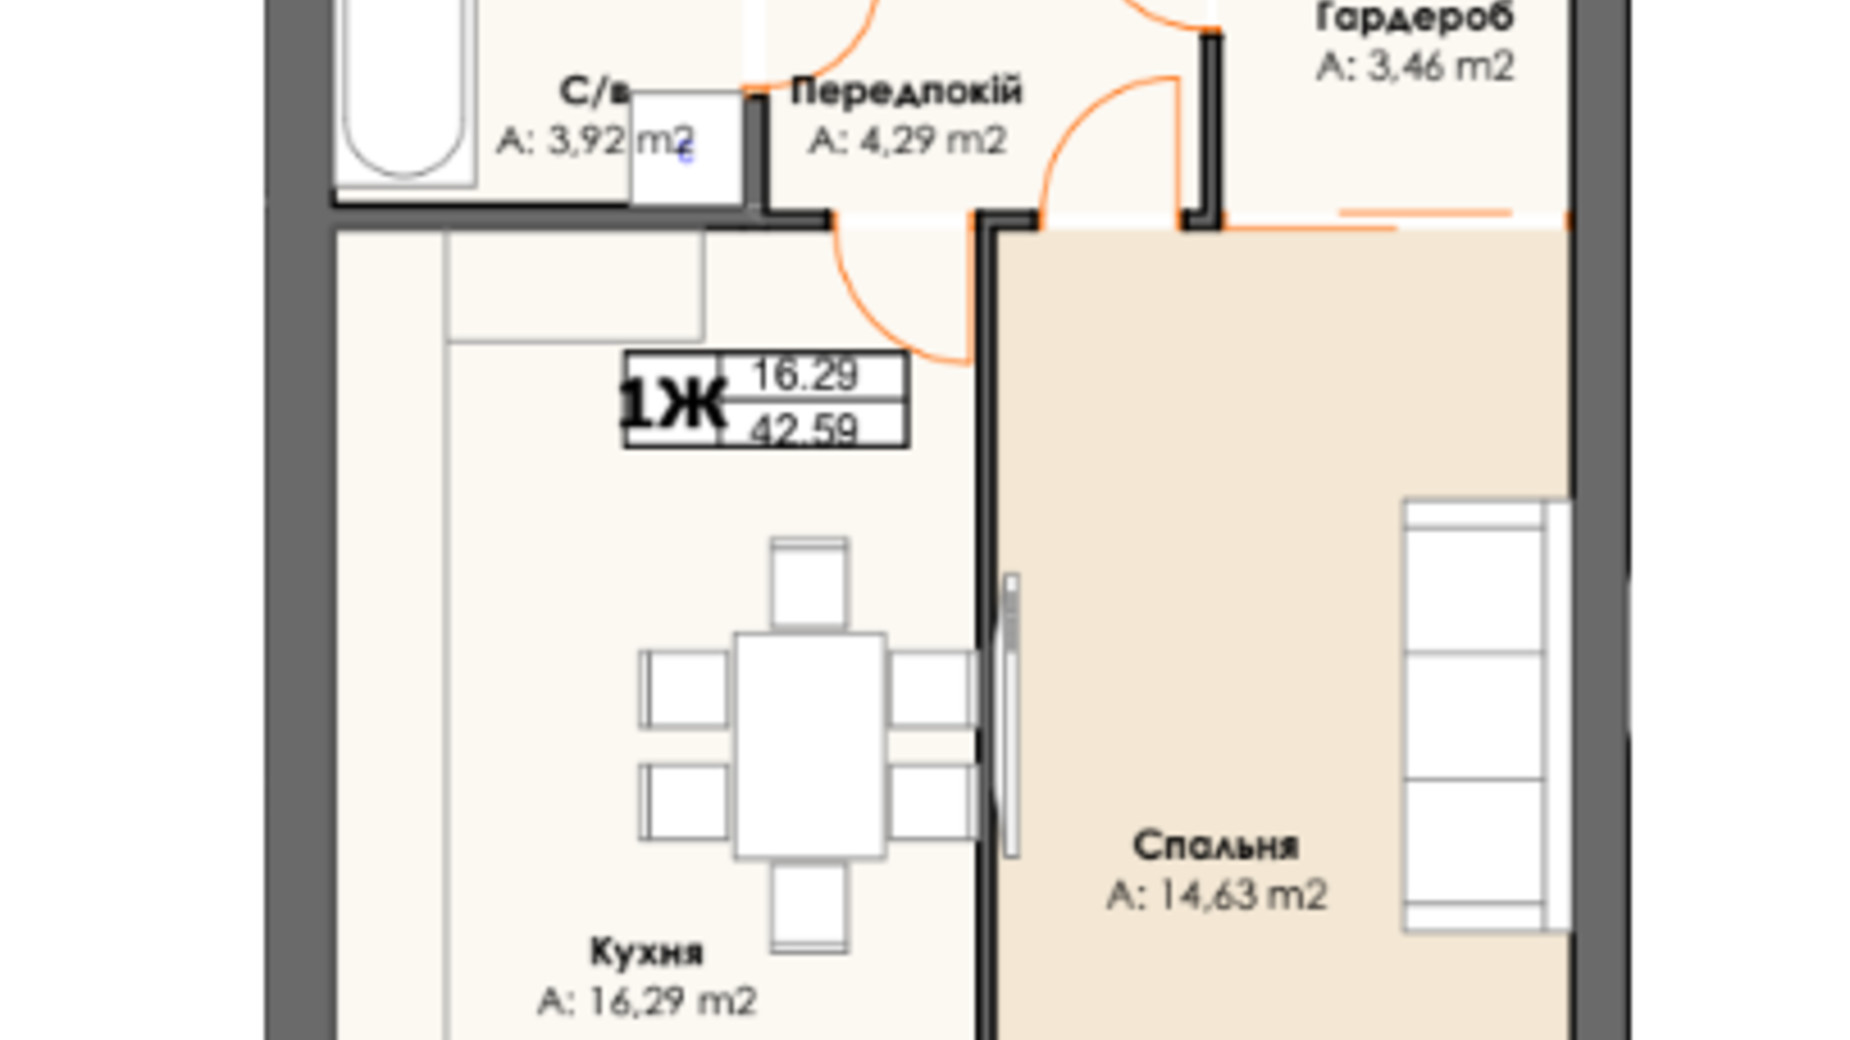 Планировка 1-комнатной квартиры в ЖК 10 Avenue 42.59 м², фото 710121